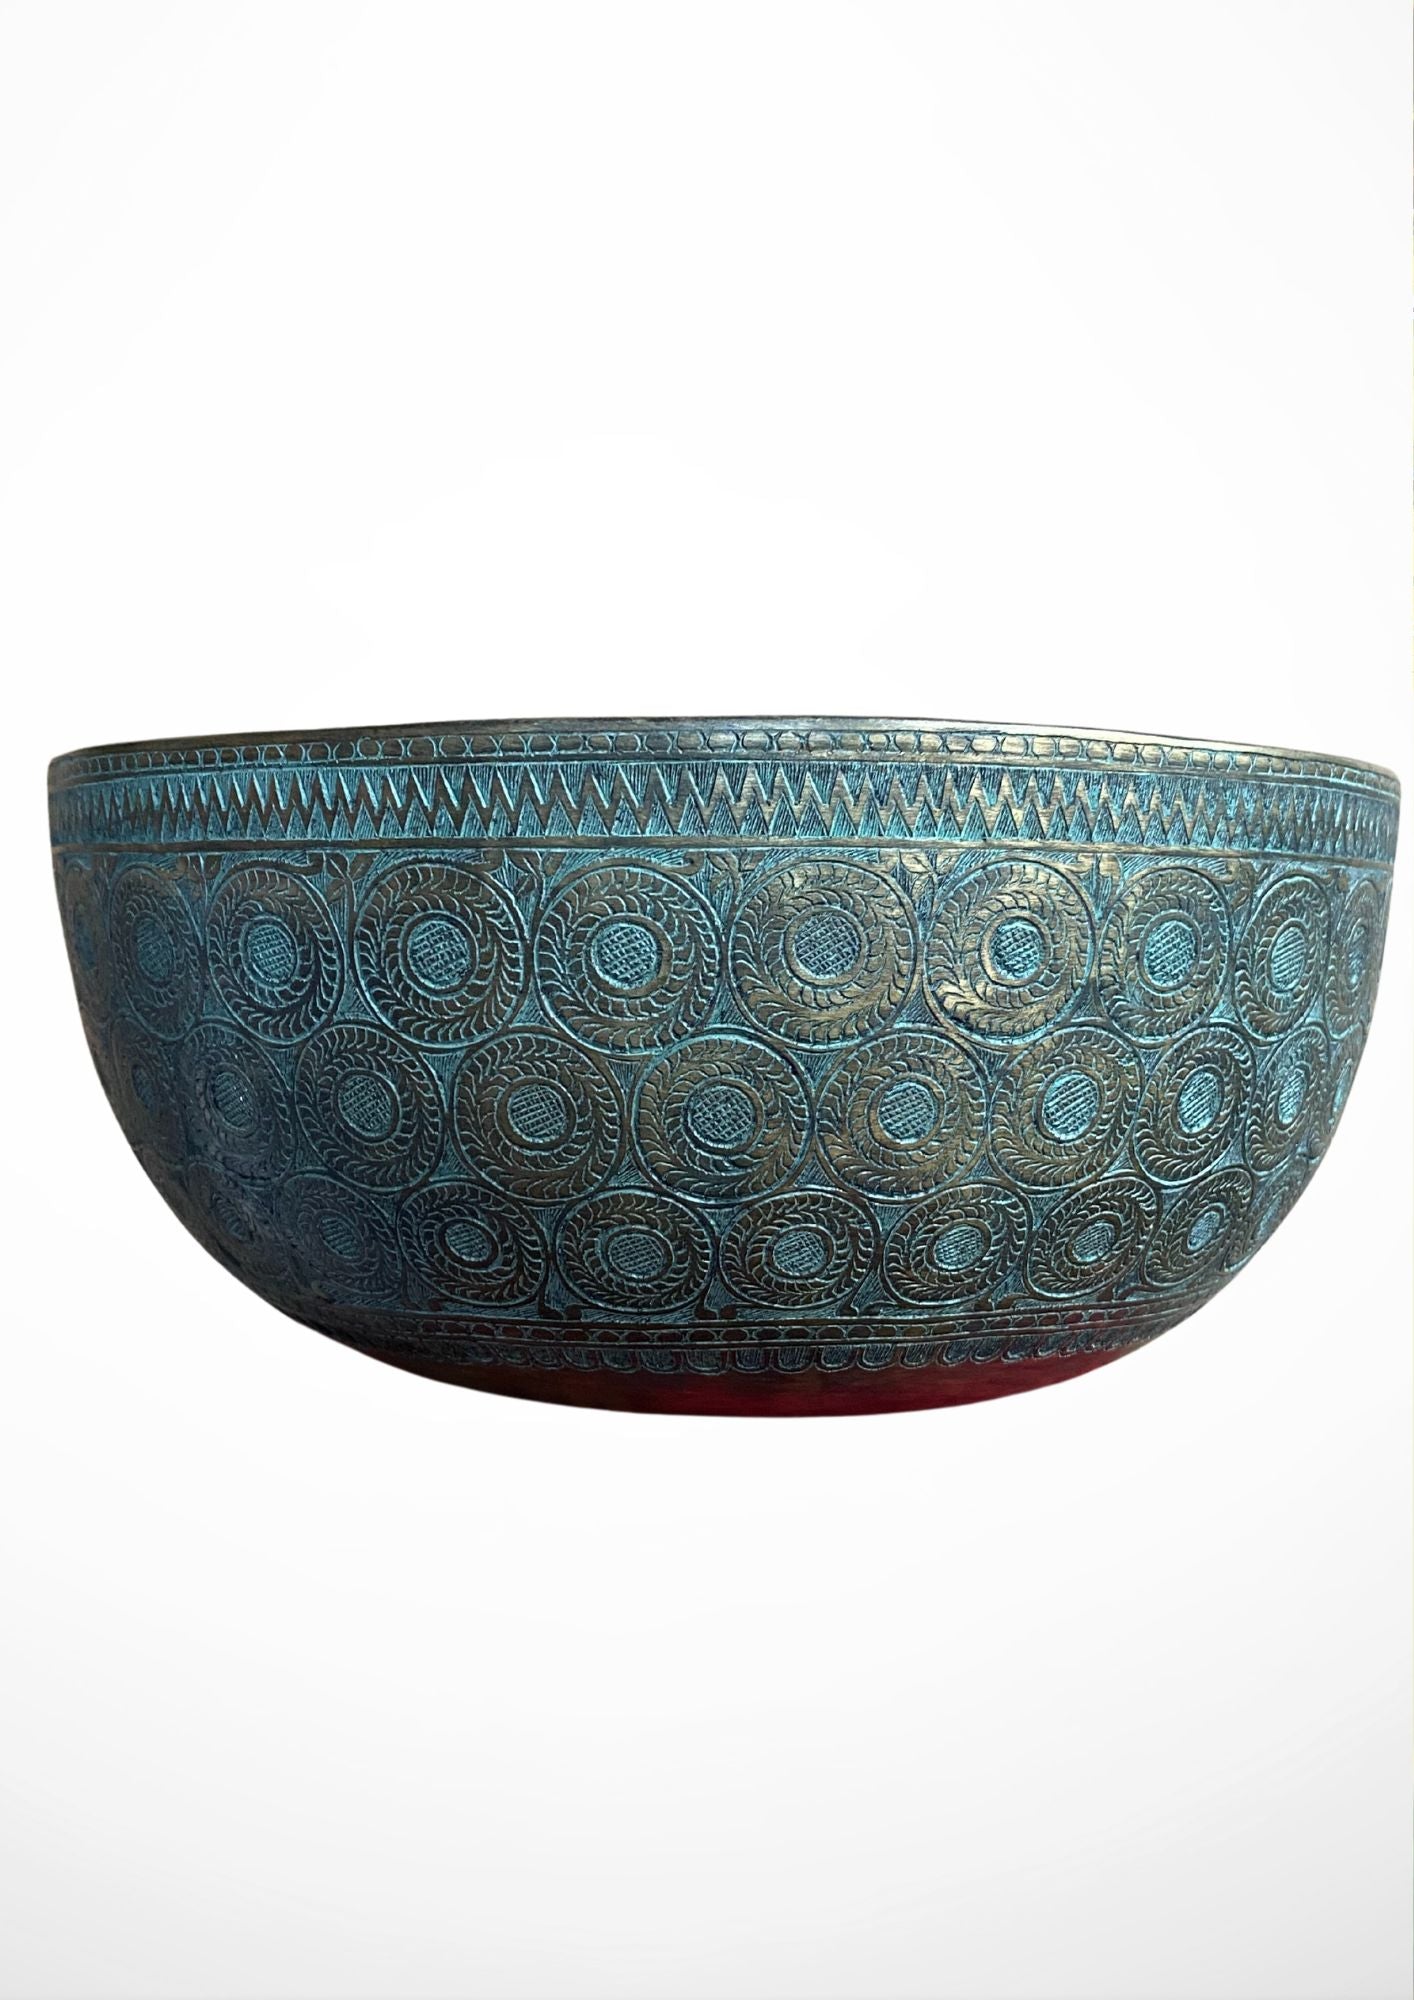 Antique Jambati Carved Singing Bowl for meditation.